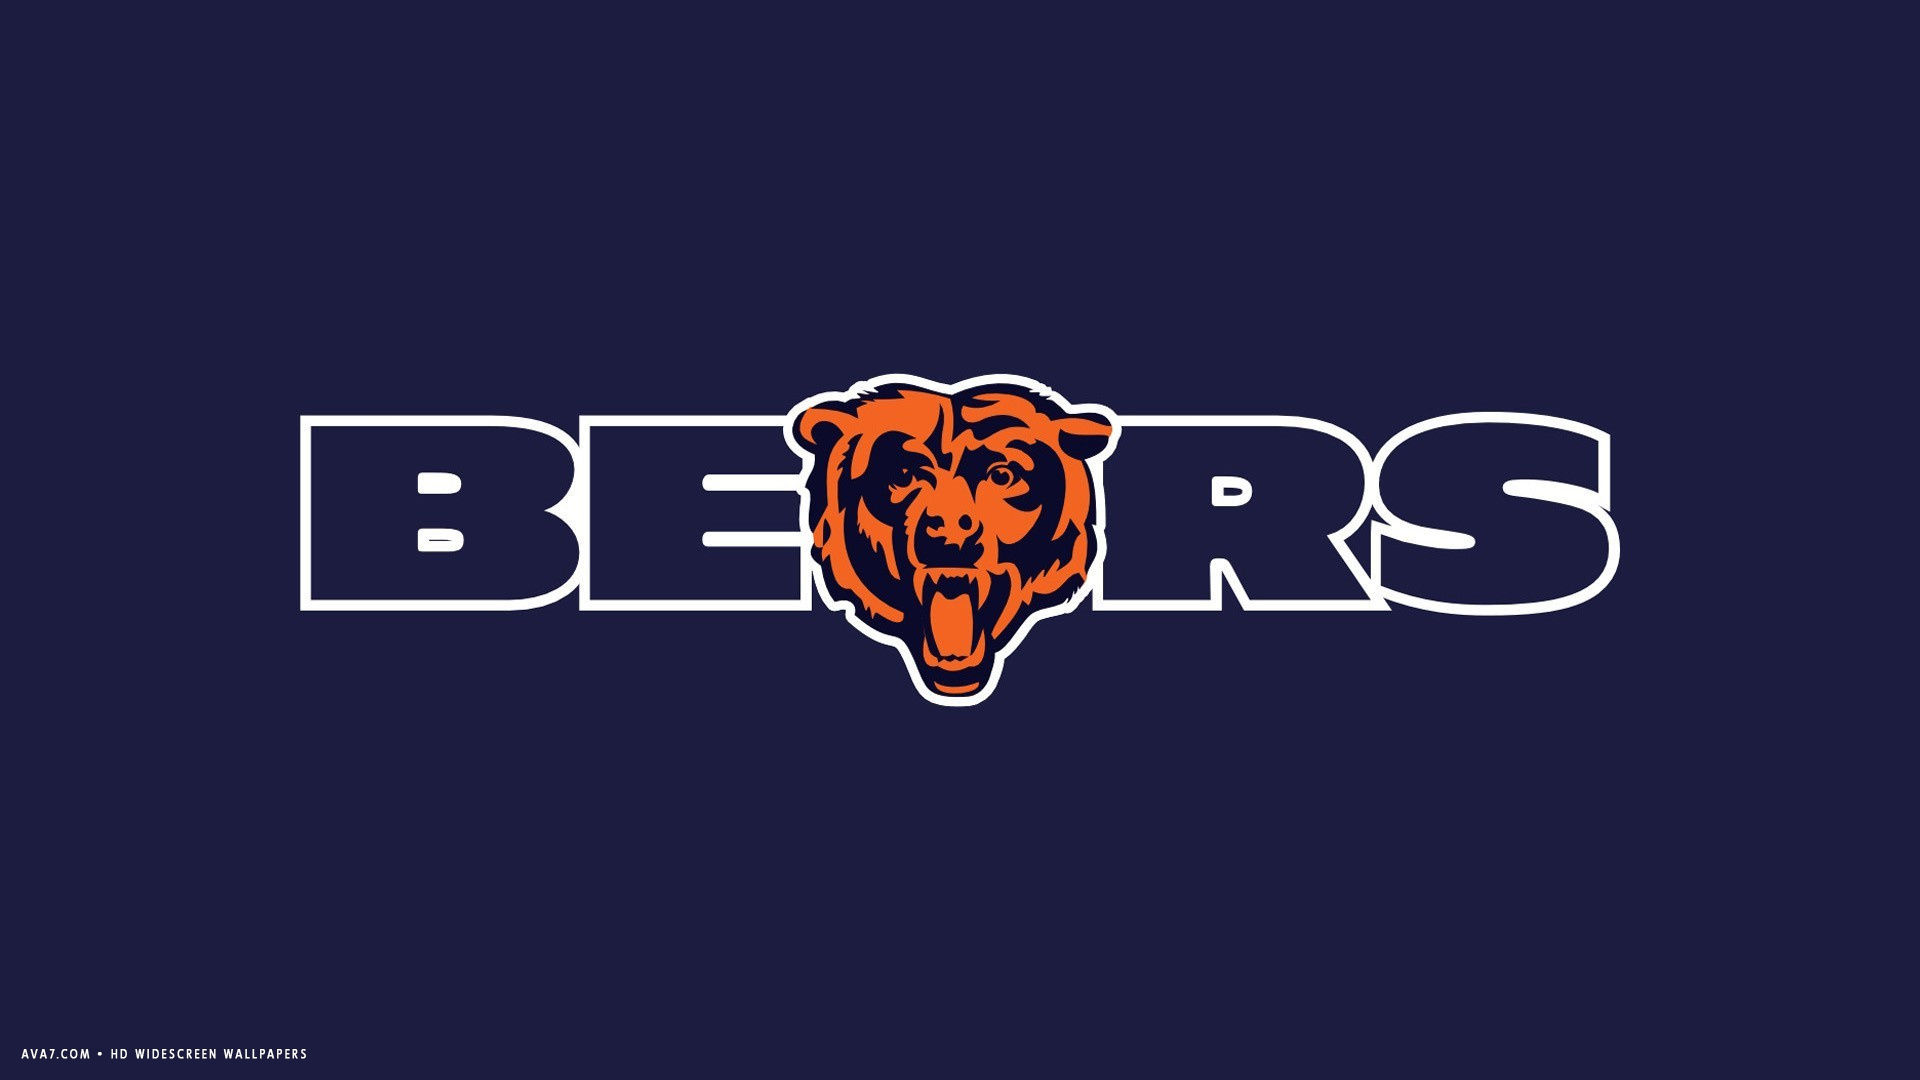 Chicago Bears Nfl Football Team Hd Widescreen Wallpaper - Chicago Bears Wallpaper Widescreen - HD Wallpaper 